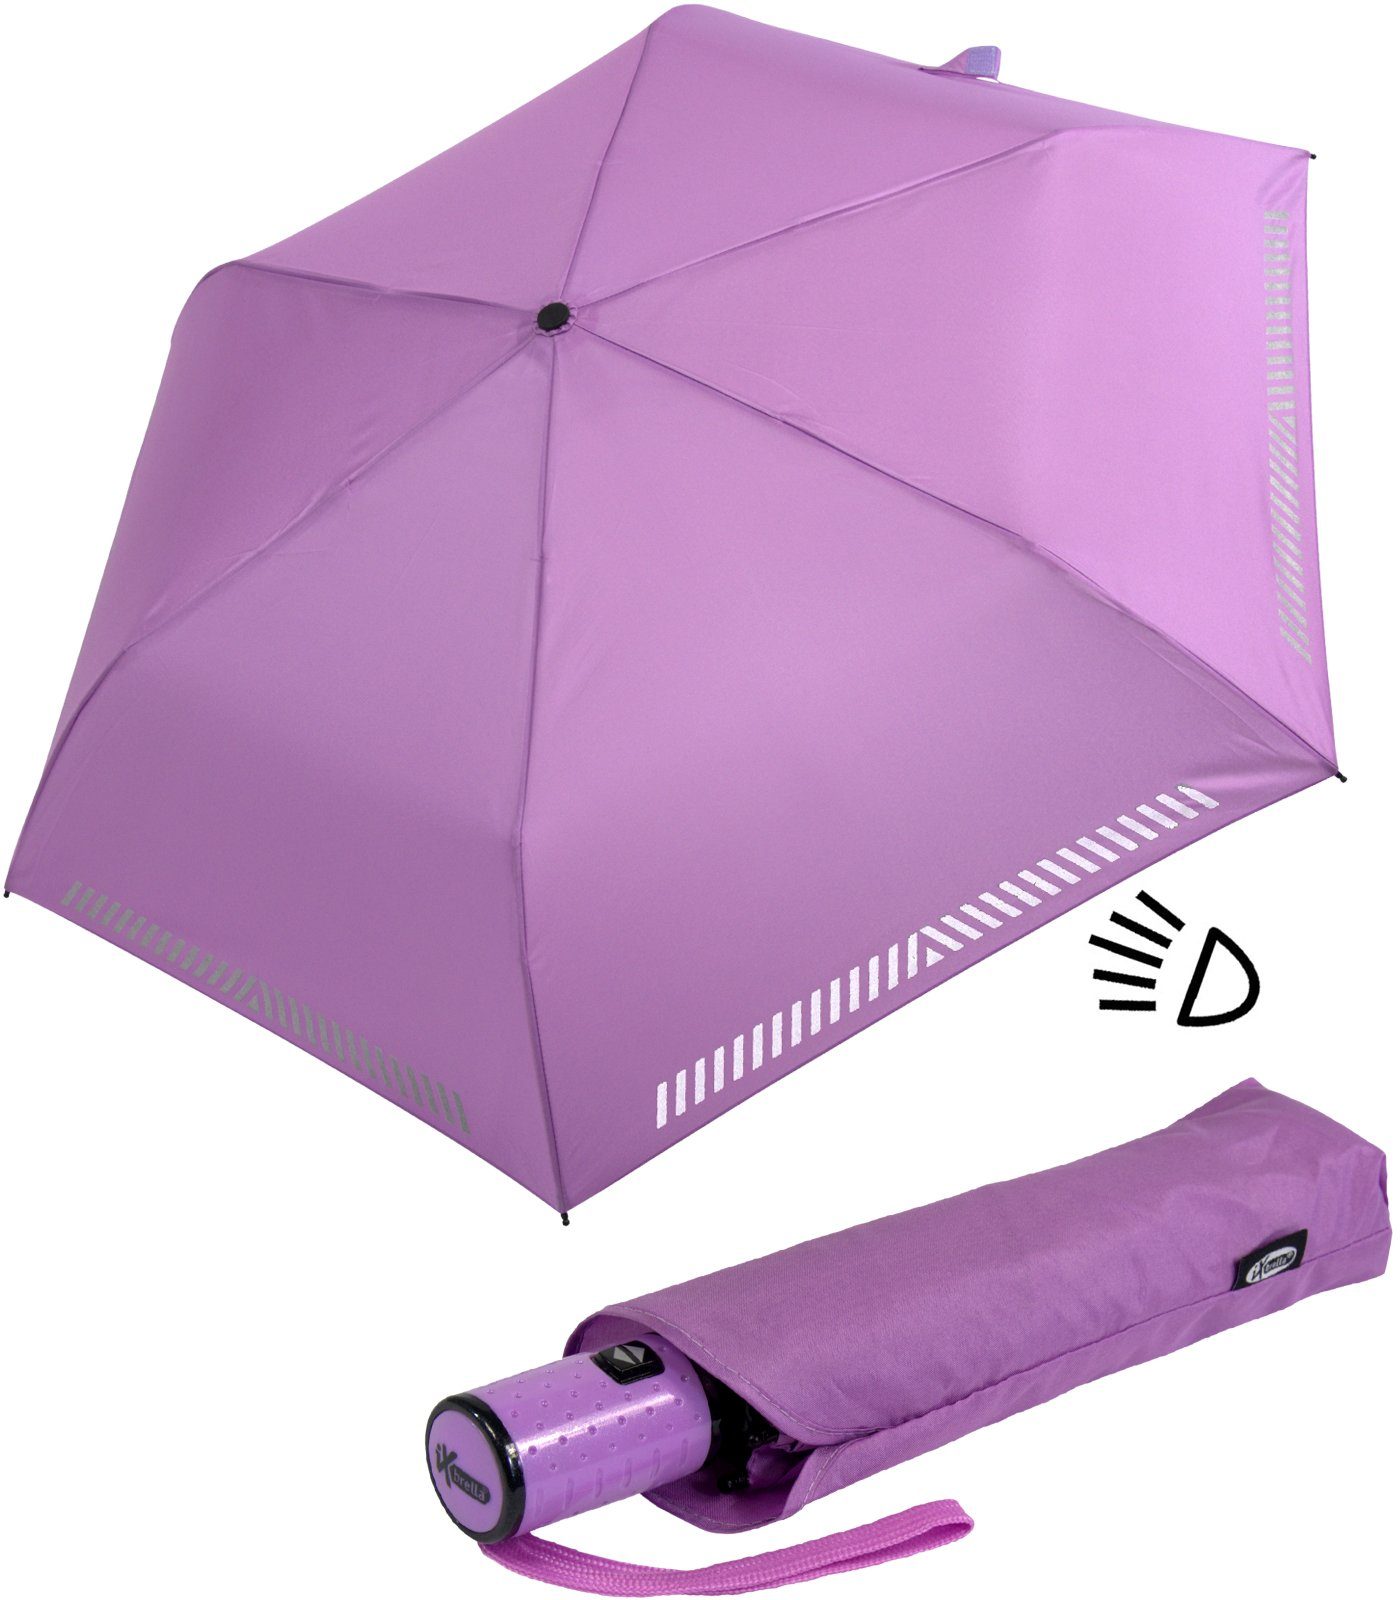 Sicherheit Reflex-Streifen - Kinderschirm hell-lila Auf-Zu-Automatik, reflektierend, iX-brella durch Taschenregenschirm mit